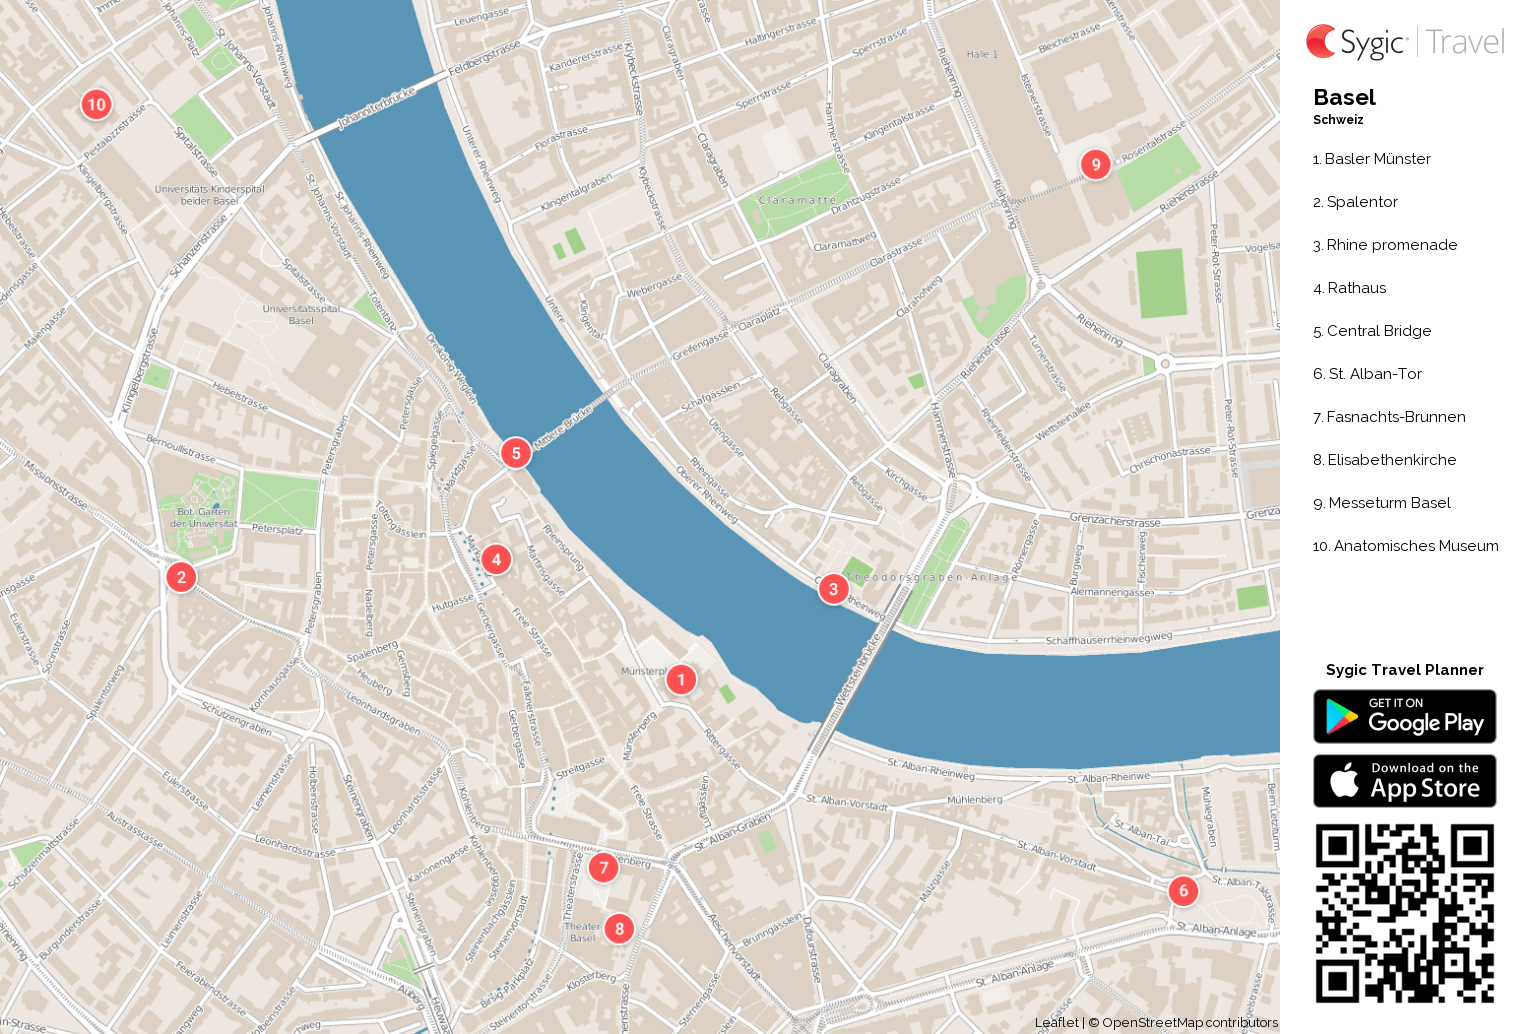 innenstadt basel karte Karte Von Basel Ausdrucken Sygic Travel innenstadt basel karte